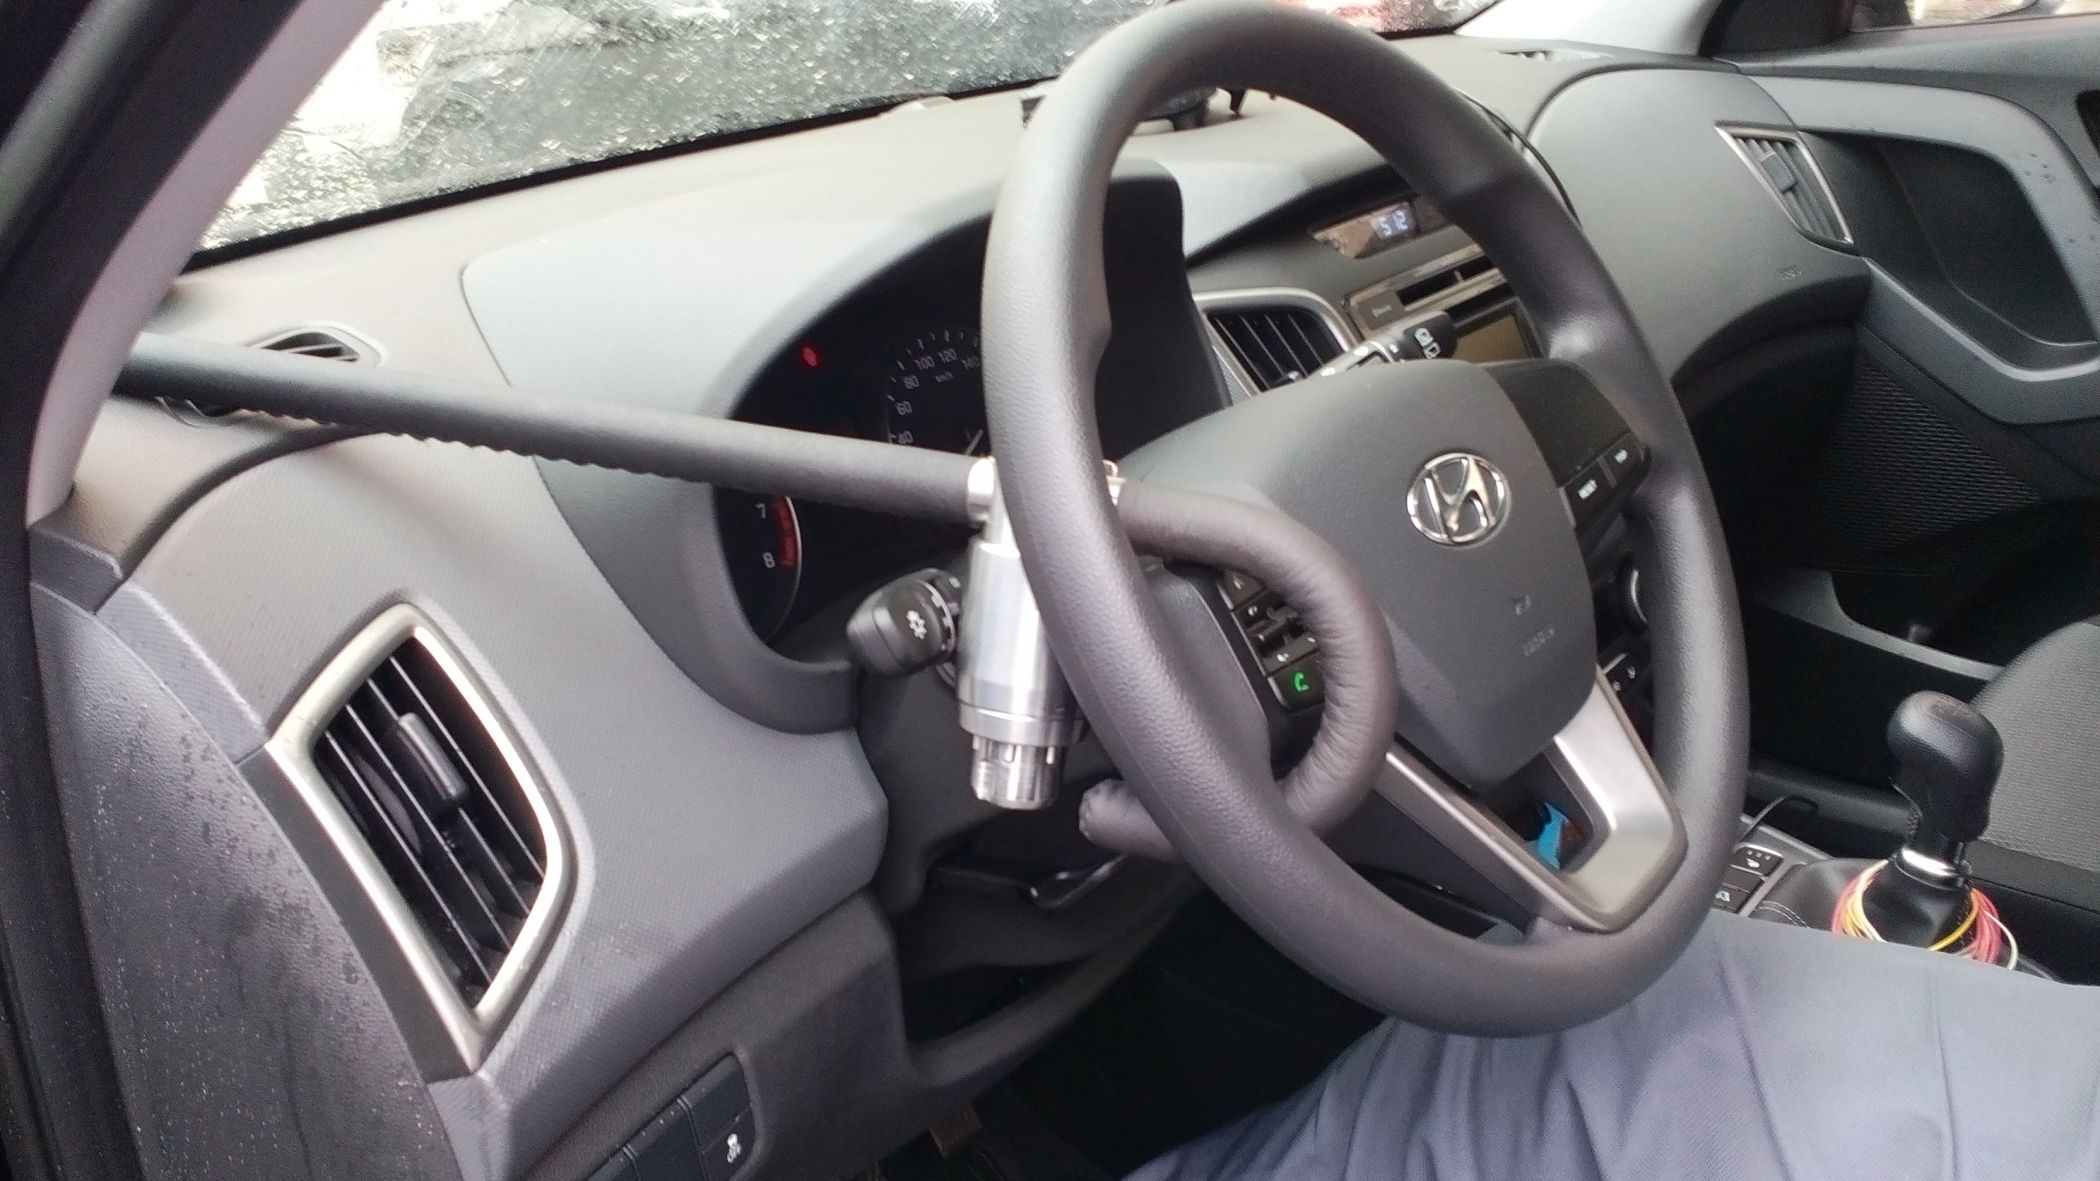 Блокиратор руля Питон установленный на автомобиле Hyundai Creta.